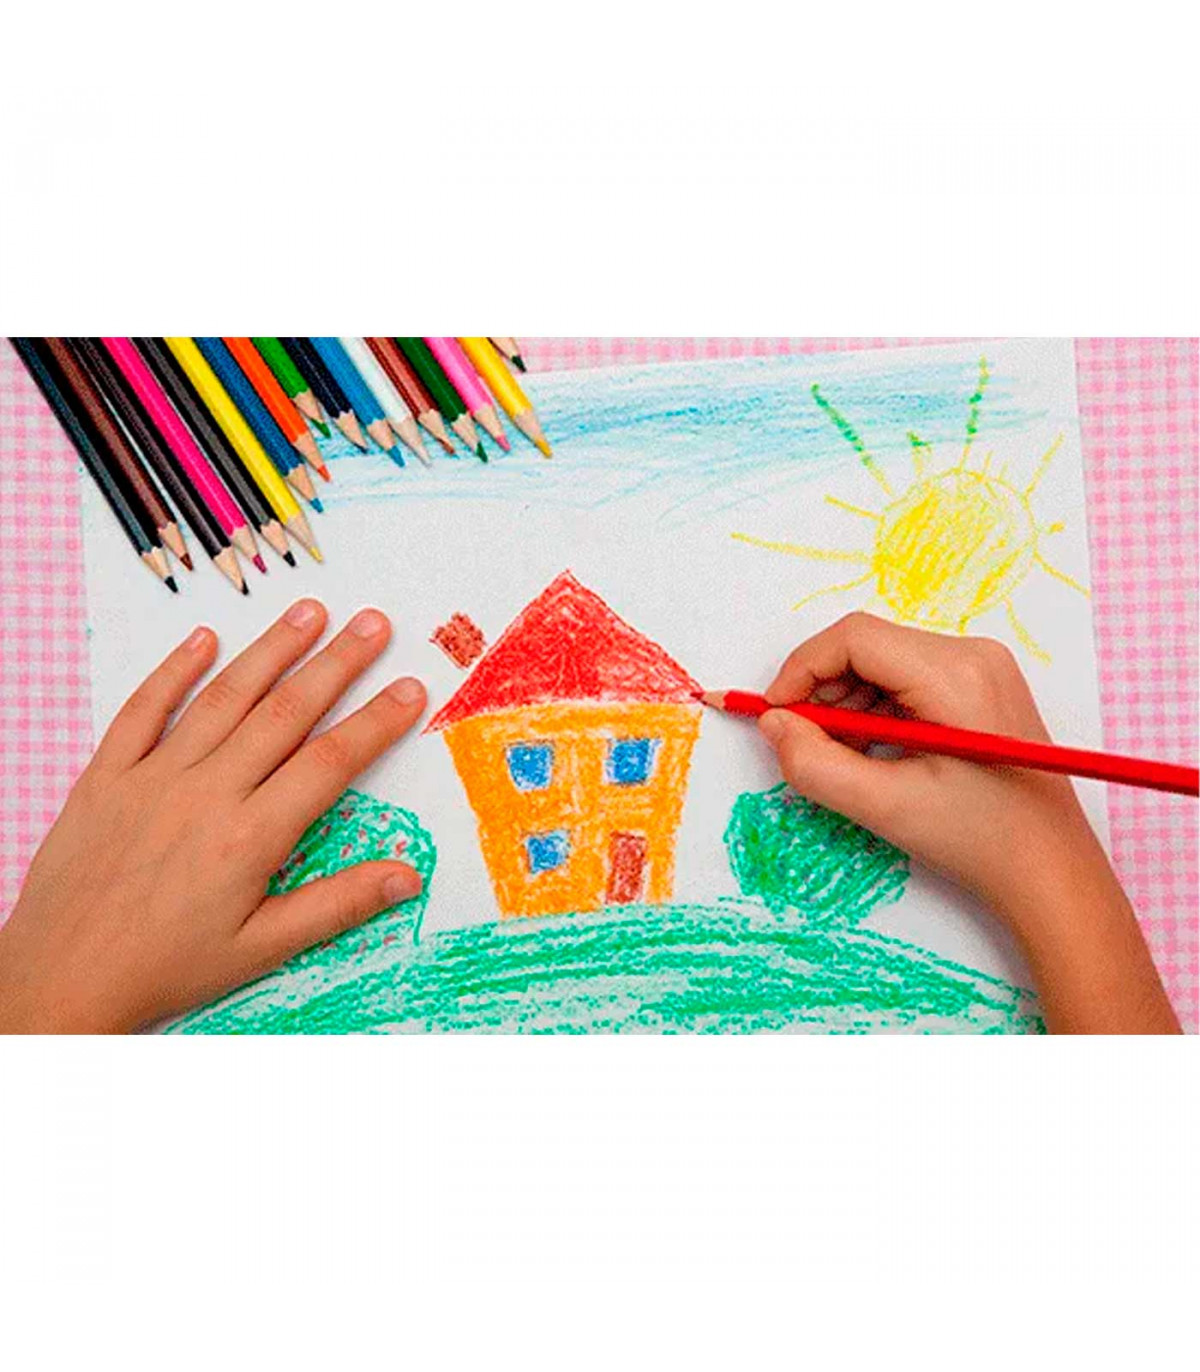 Página para colorear con lápices de colores para niños